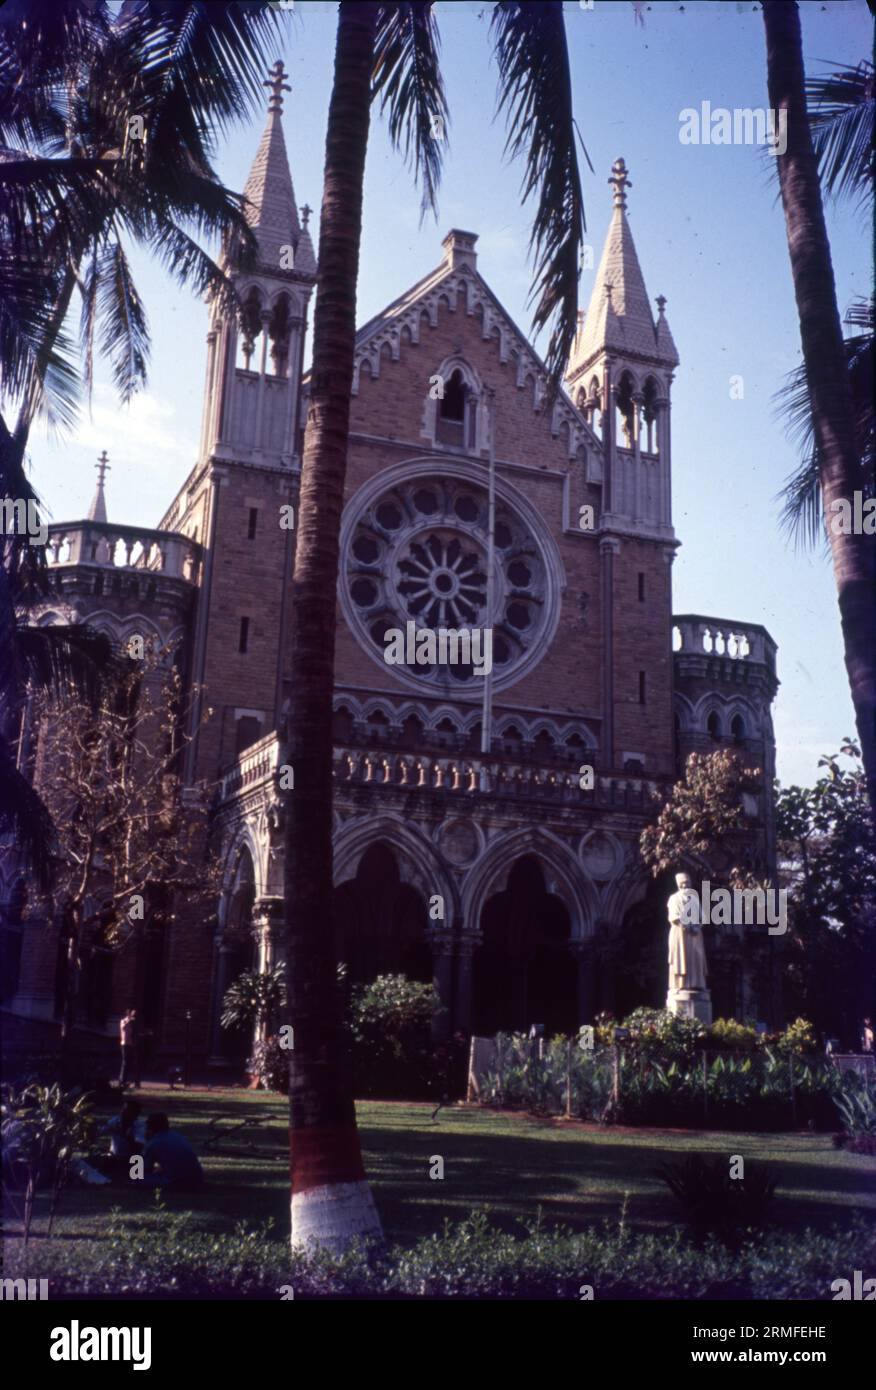 L'Université de Mumbai est une université publique de Mumbai. C'est l'un des plus grands systèmes universitaires au monde avec plus de 549 000 étudiants sur ses campus et collèges affiliés. En 2013, l'université comptait 711 collèges affiliés. Ratan Tata est nommé à la tête du conseil consultatif. Banque D'Images